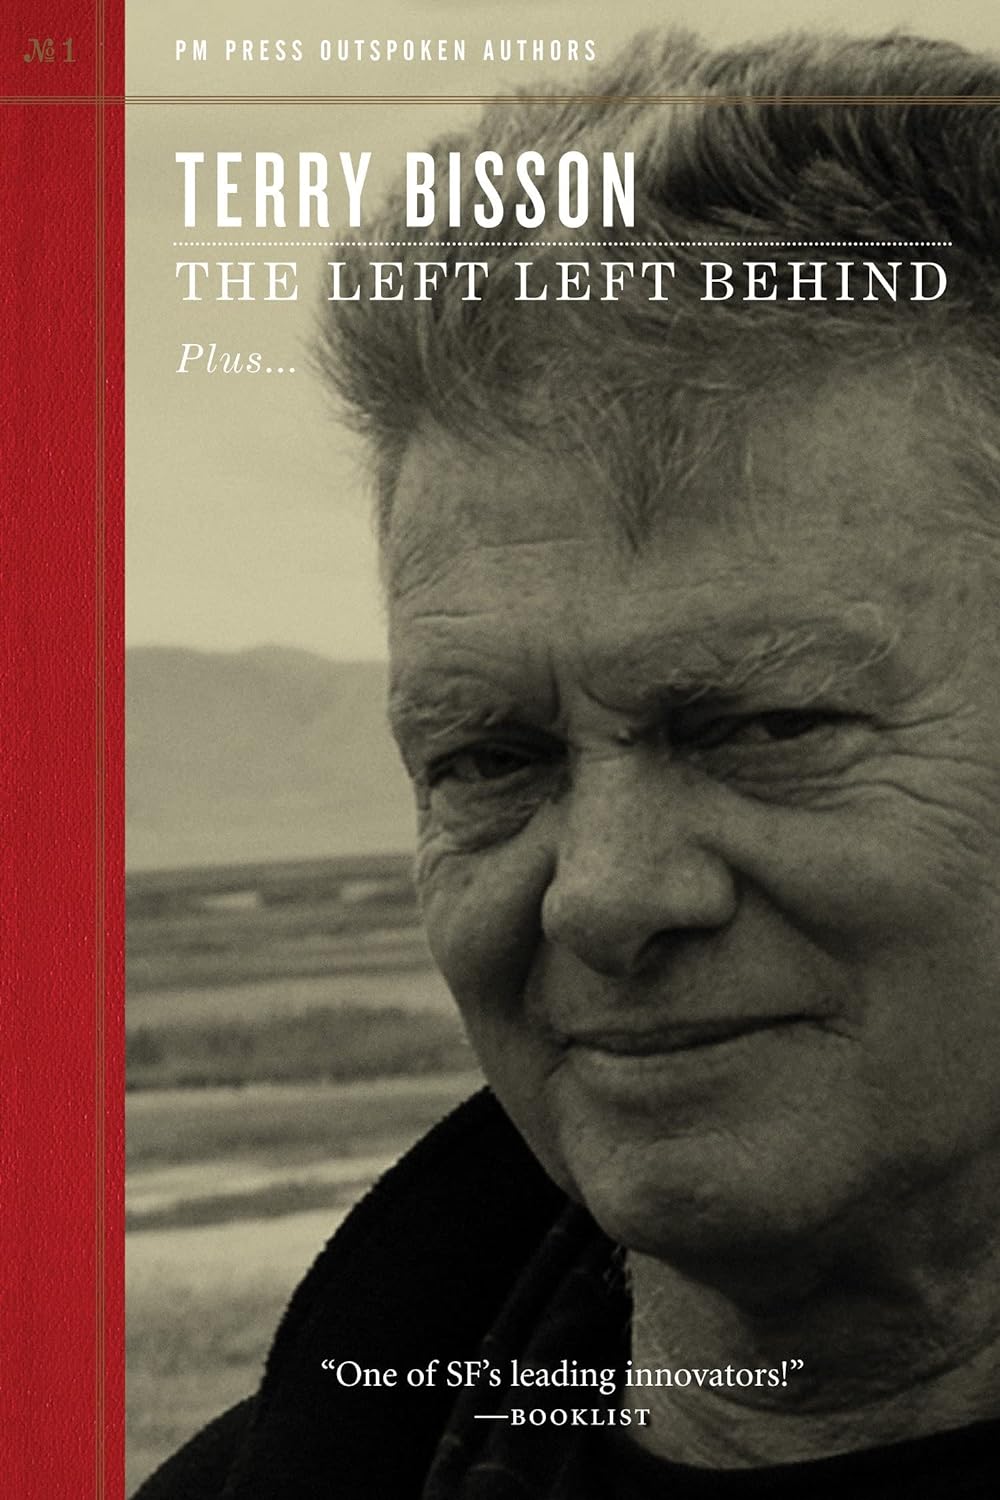 The left left behind (2009, PM Press, Gazelle [distributor])